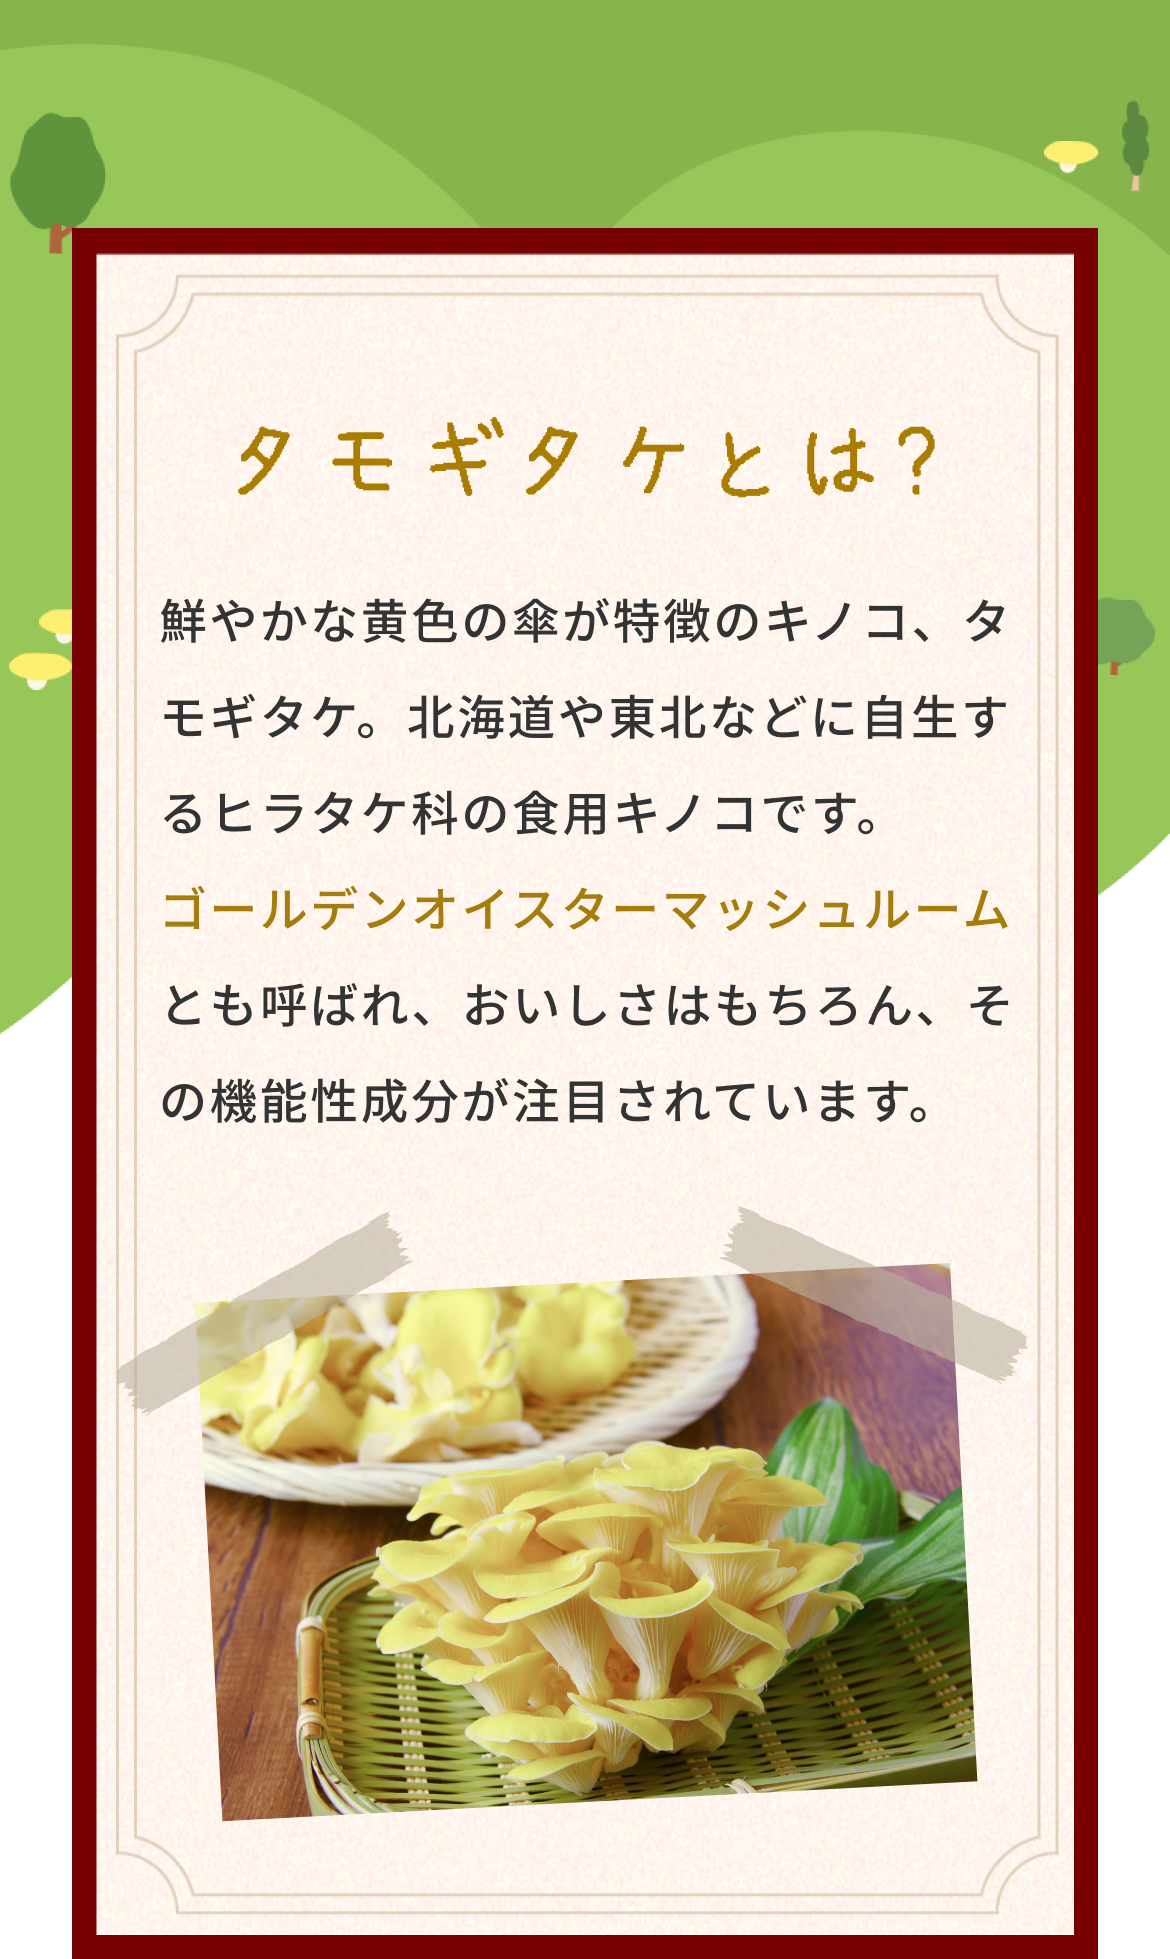 タモギタケとは？鮮やかな黄色の傘が特徴のキノコ、タモギタケ。北海道や東北などに自生するヒラタケ科の食用キノコです。ゴールデンオイスターマッシュルームとも呼ばれ、おいしさはもちろん、その機能性成分が注目されています。